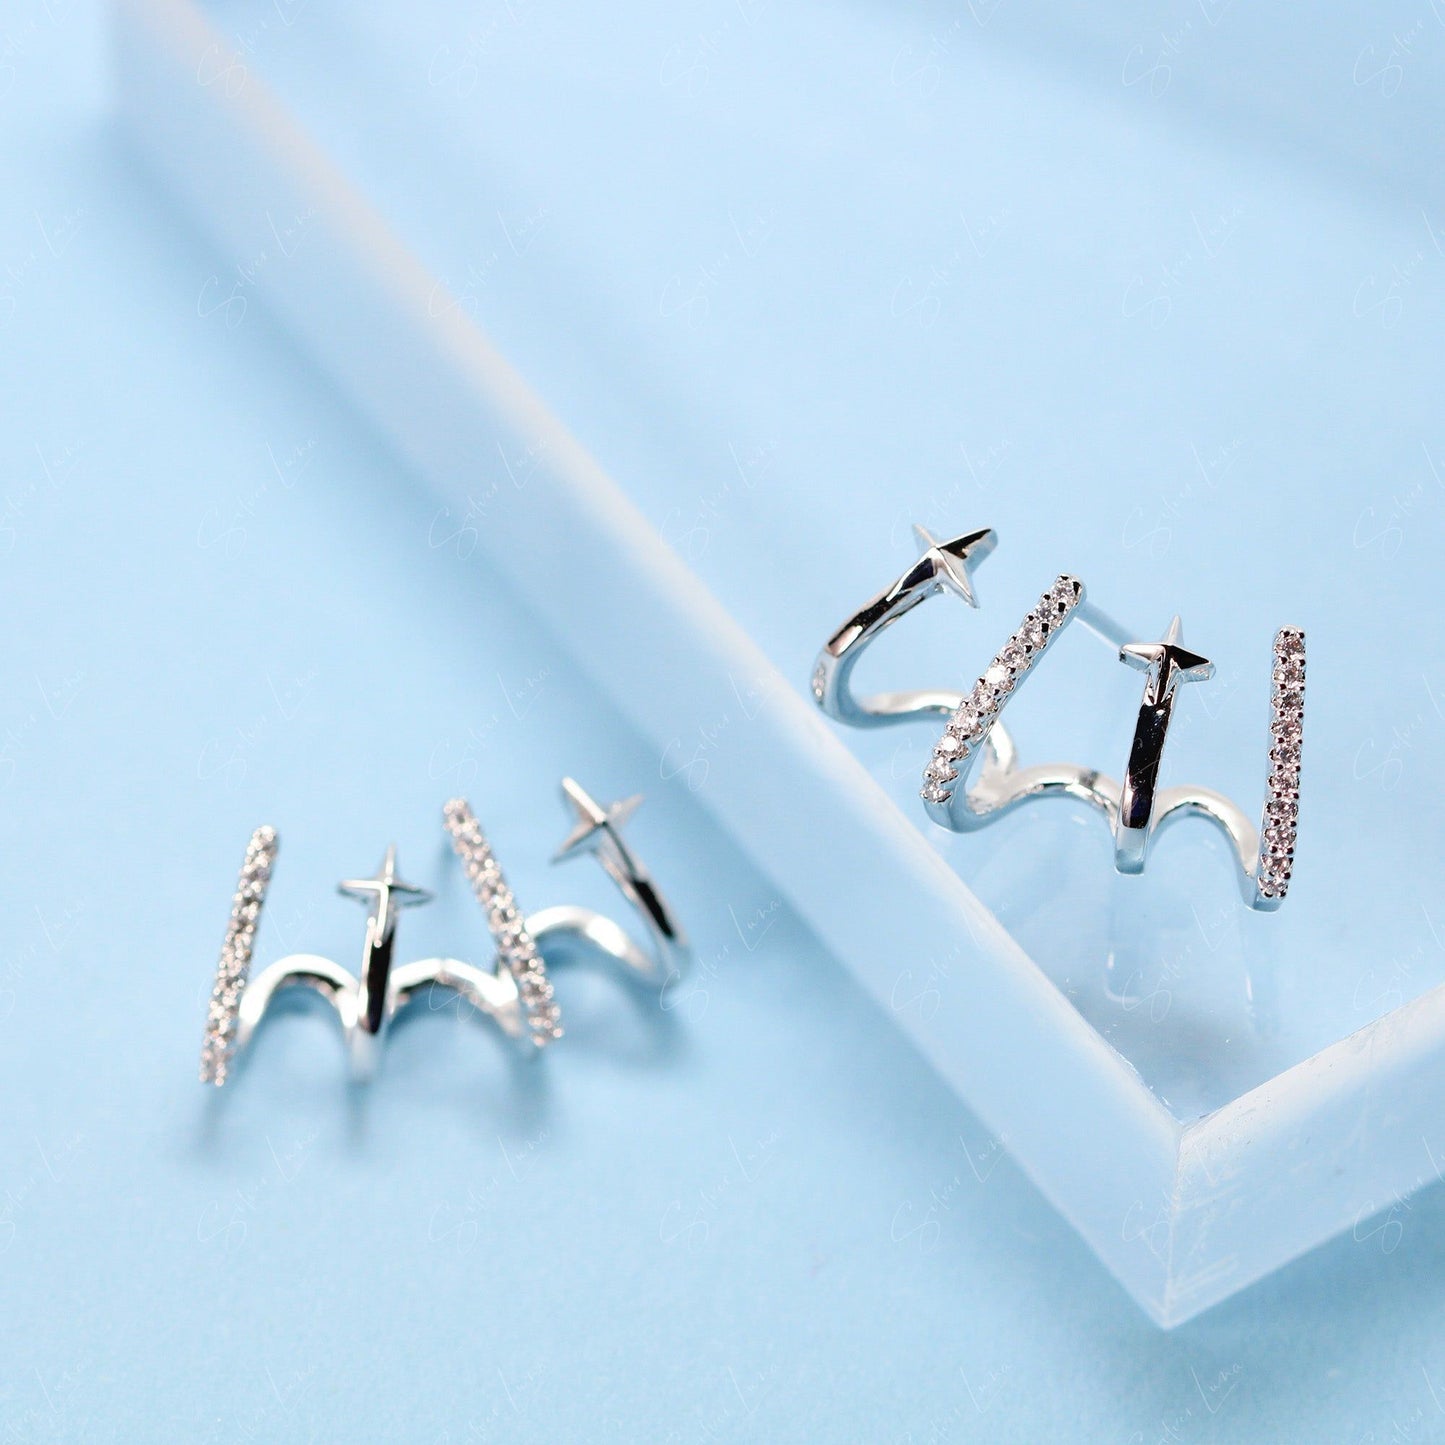 Star wrap micro zircon sterling silver stud earrings